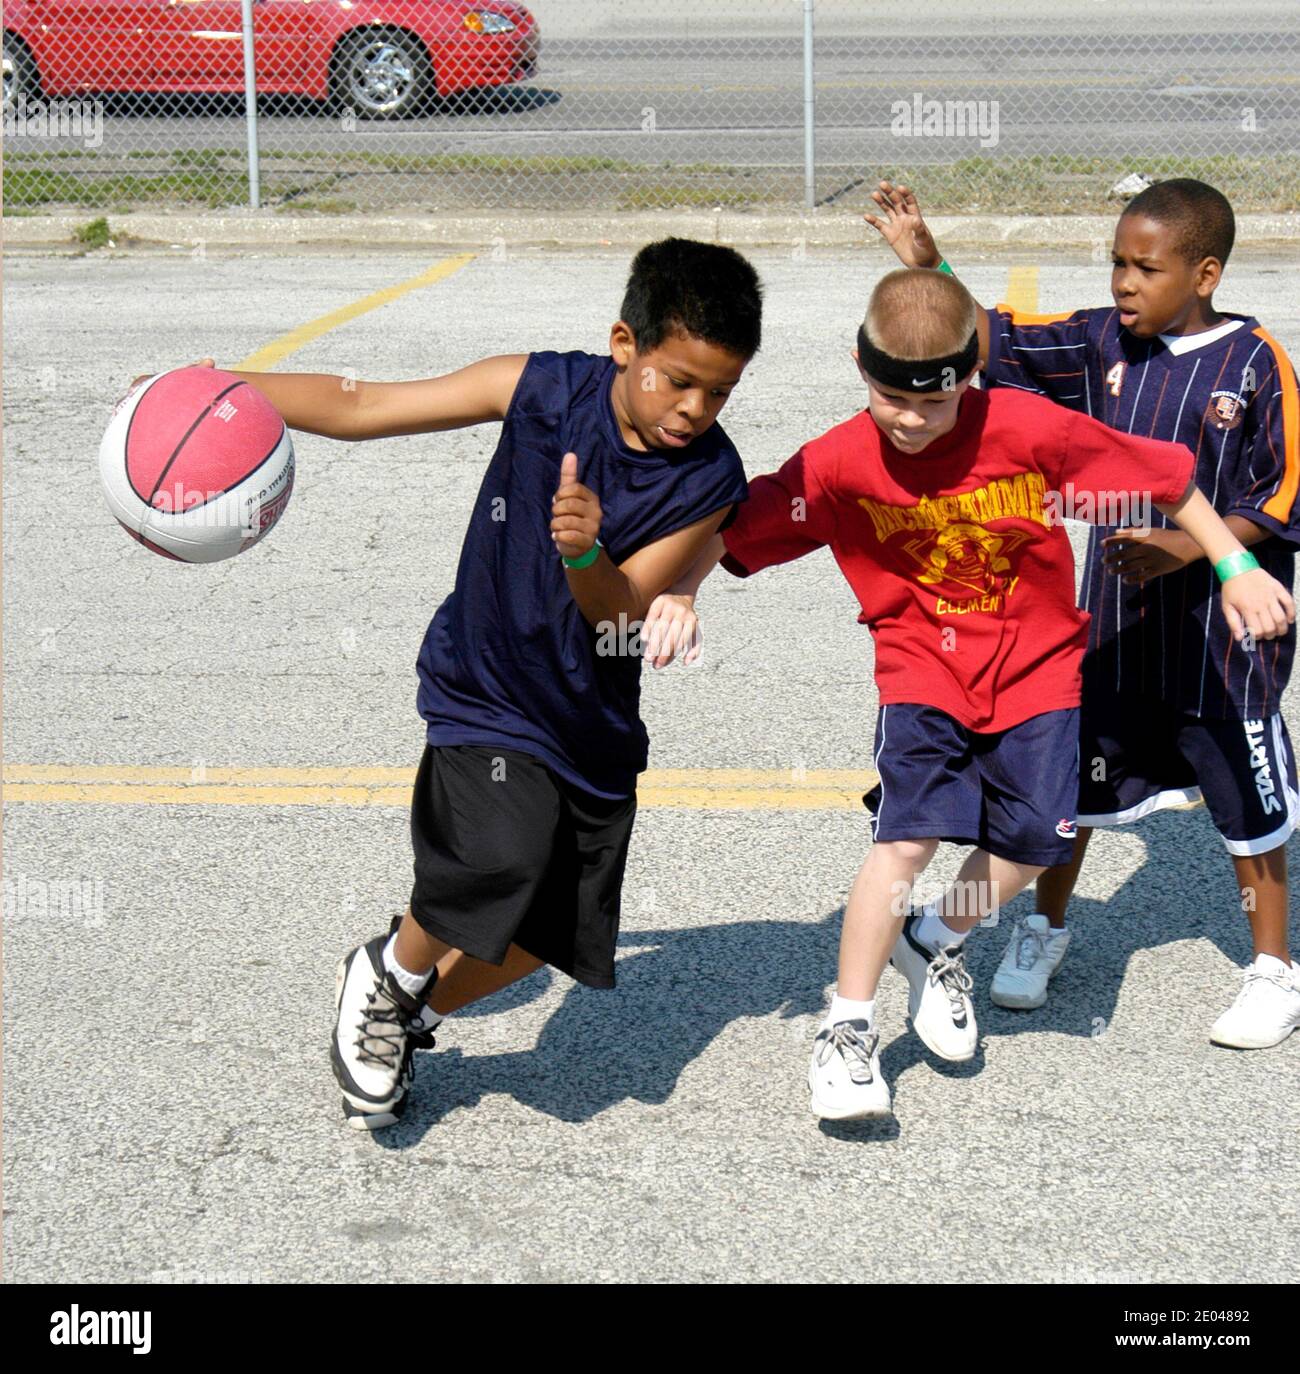 8 bis 10 Jahre alten Jungen und Mädchen spielen Basketball außerhalb in einem Turnier gesponsert Stadt Port Huron Michigan MI Stockfoto